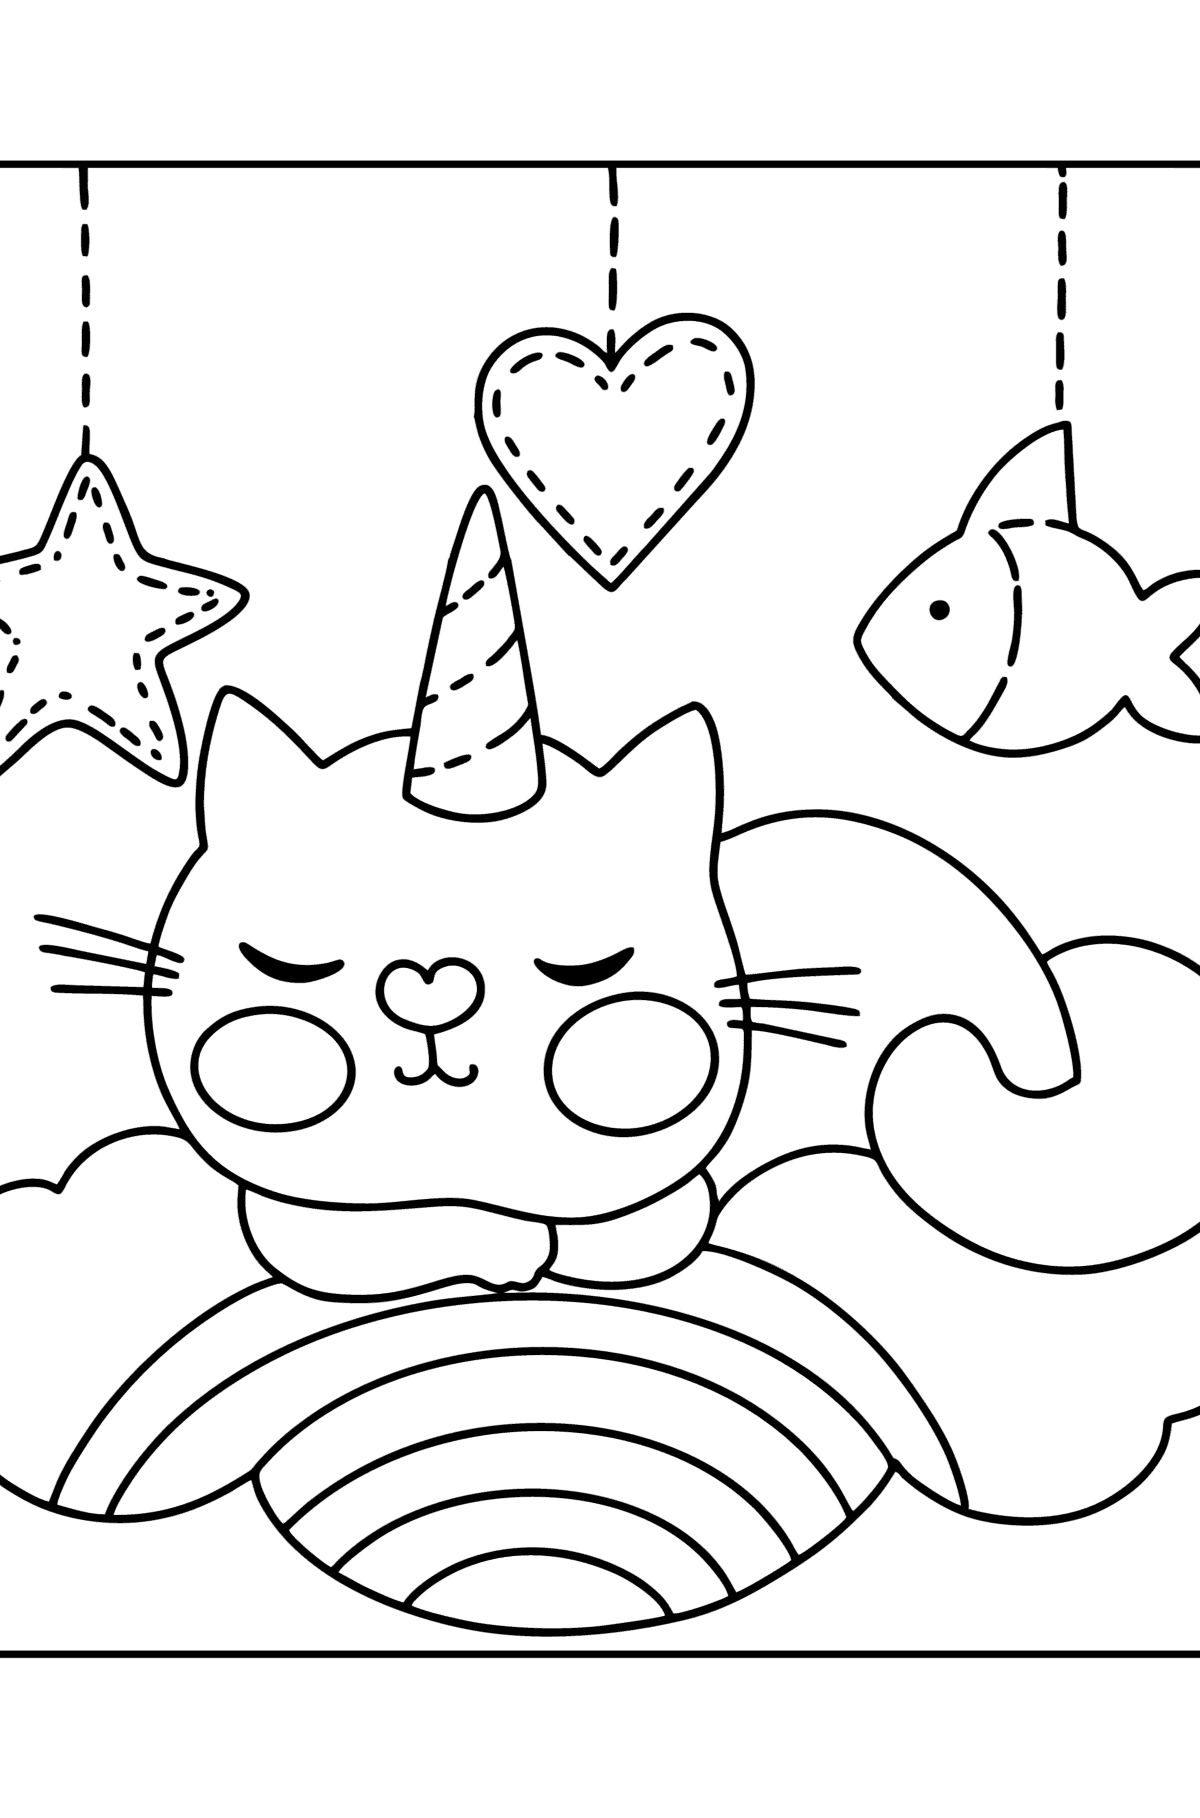 Dibujo de Precioso Gato Unicornio para colorear - Dibujos para Colorear para Niños